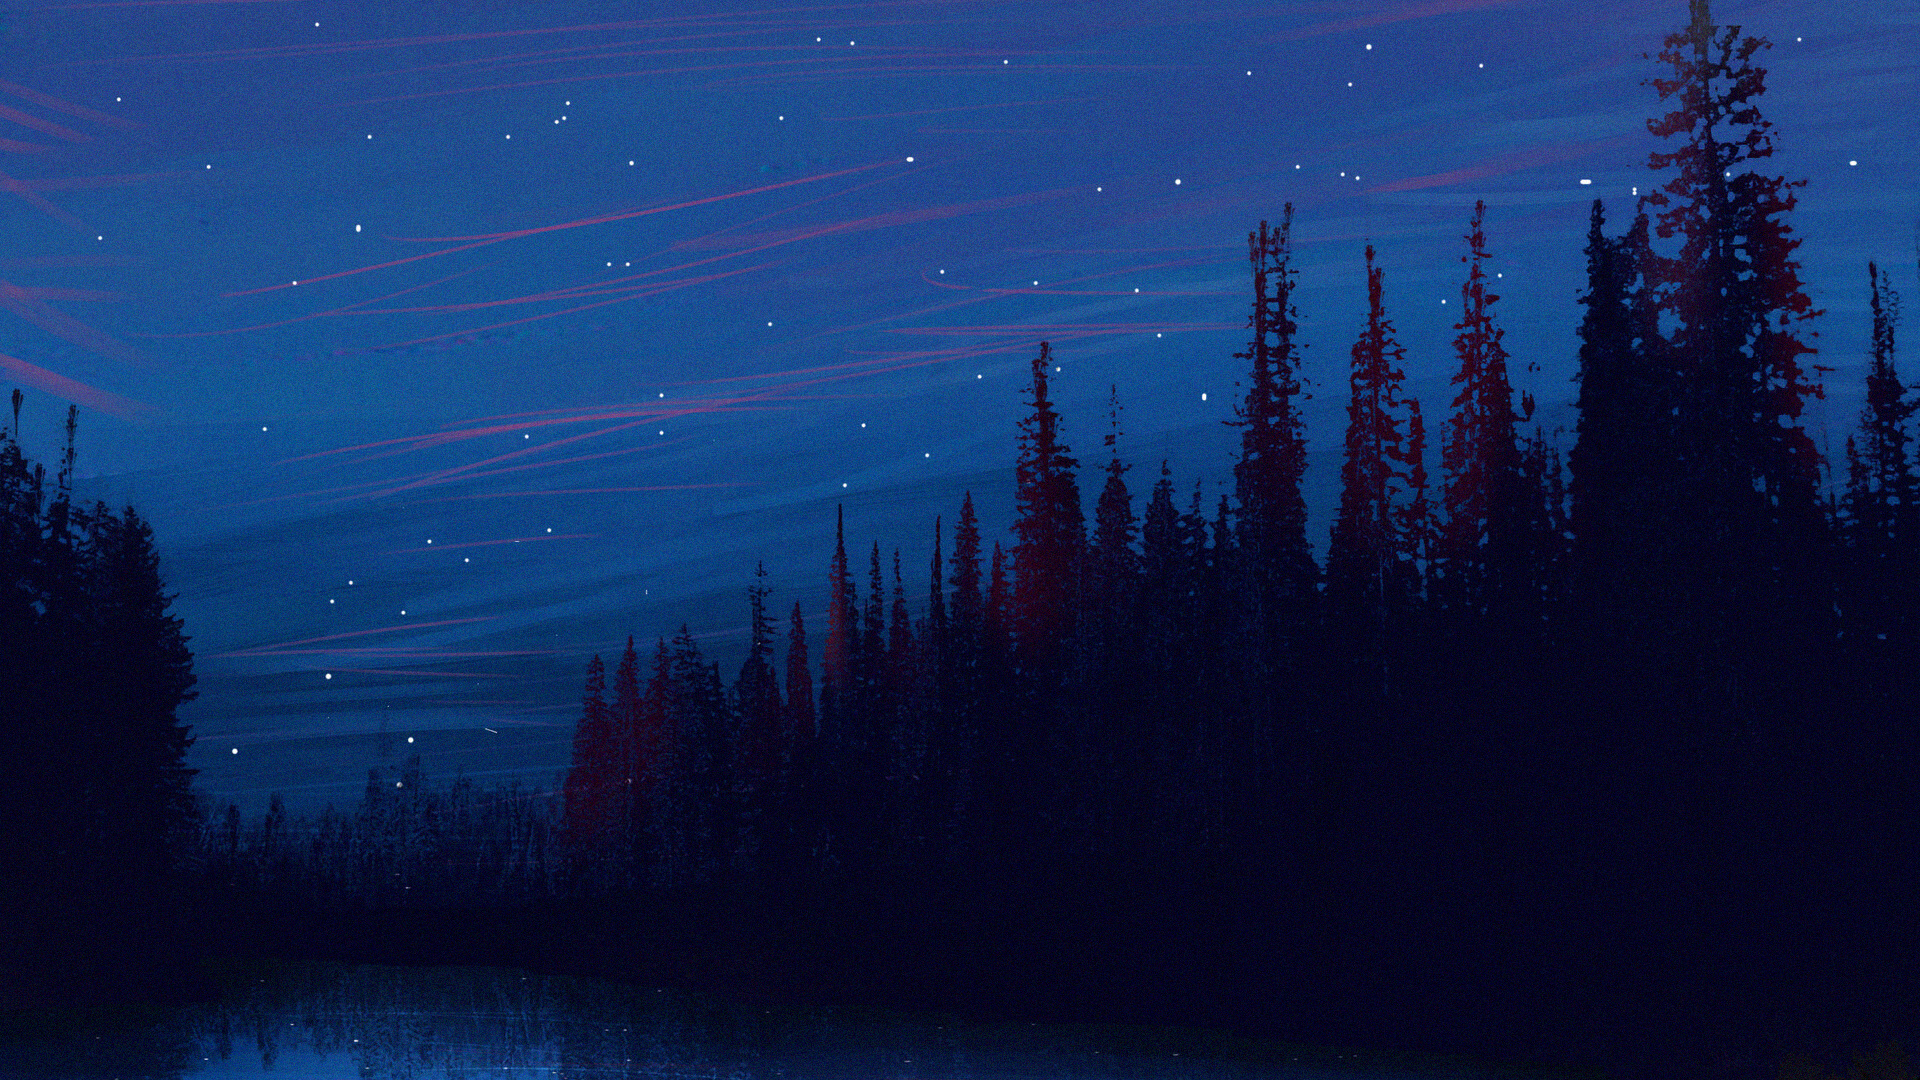 Nacht, Natur, Blau, Mond, Purpur. Wallpaper in 1920x1080 Resolution